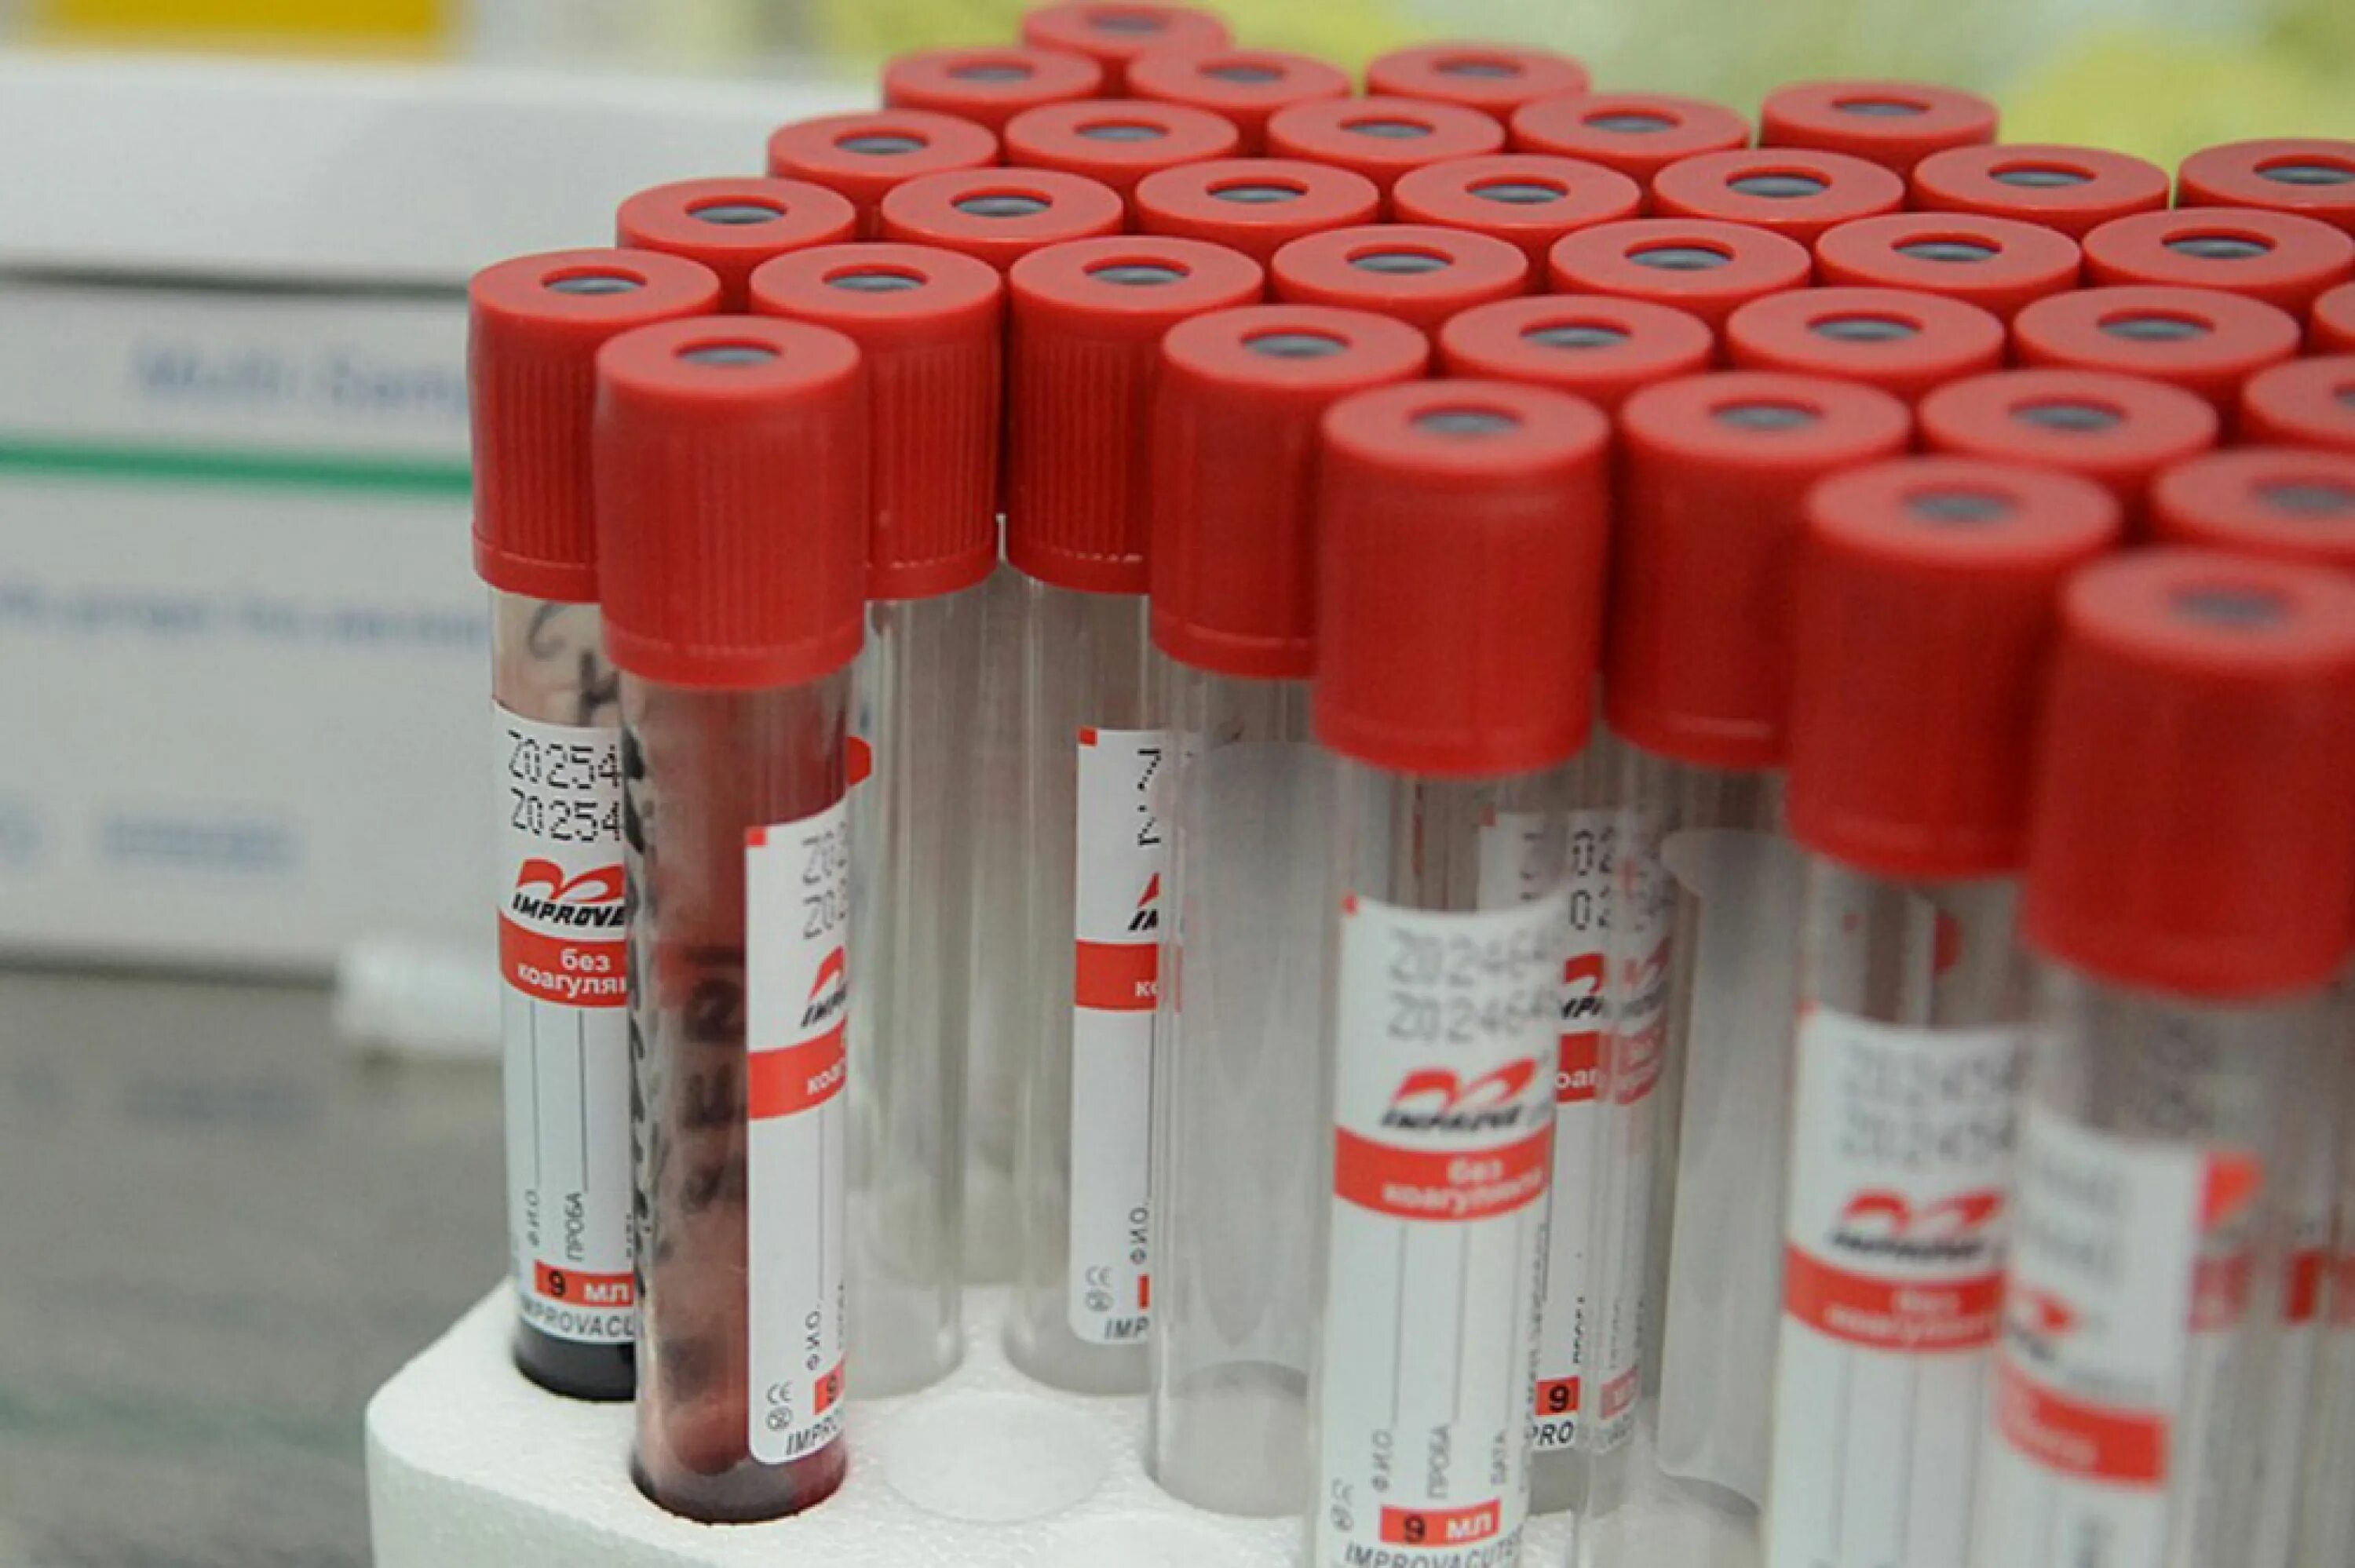 Вакцинация от коронавируса в Липецке. Штамм фабрика крови.